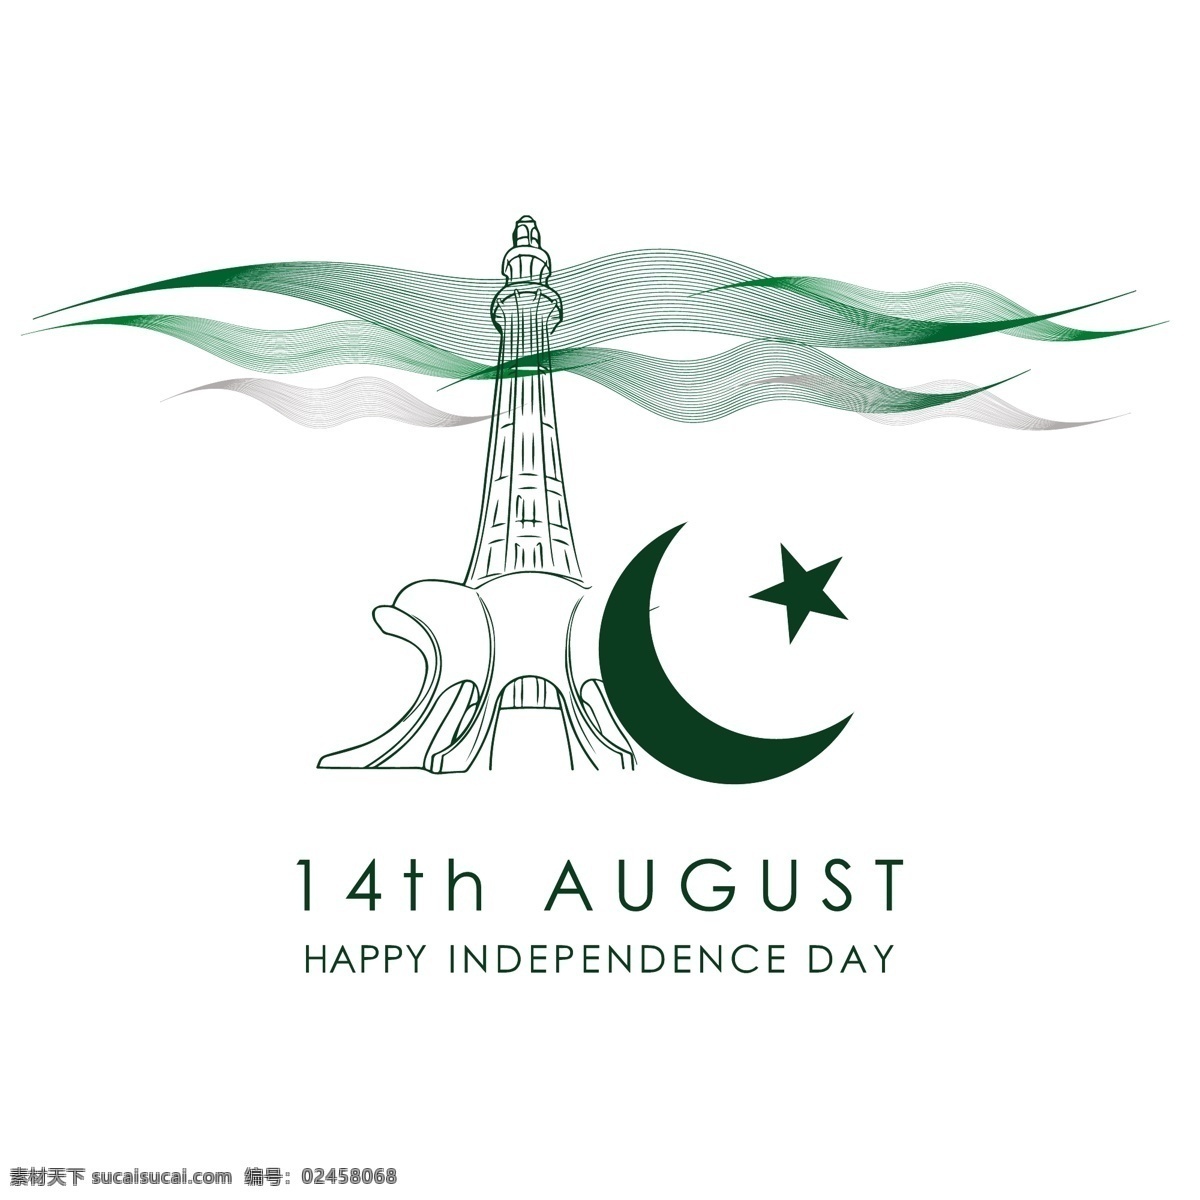 巴基斯坦 独立日 庆典 卡 背景 横幅 传单 抽象 旅游 明星 徽章 标志 绿色 模板 快乐 色彩 艺术 月亮 文本 节日